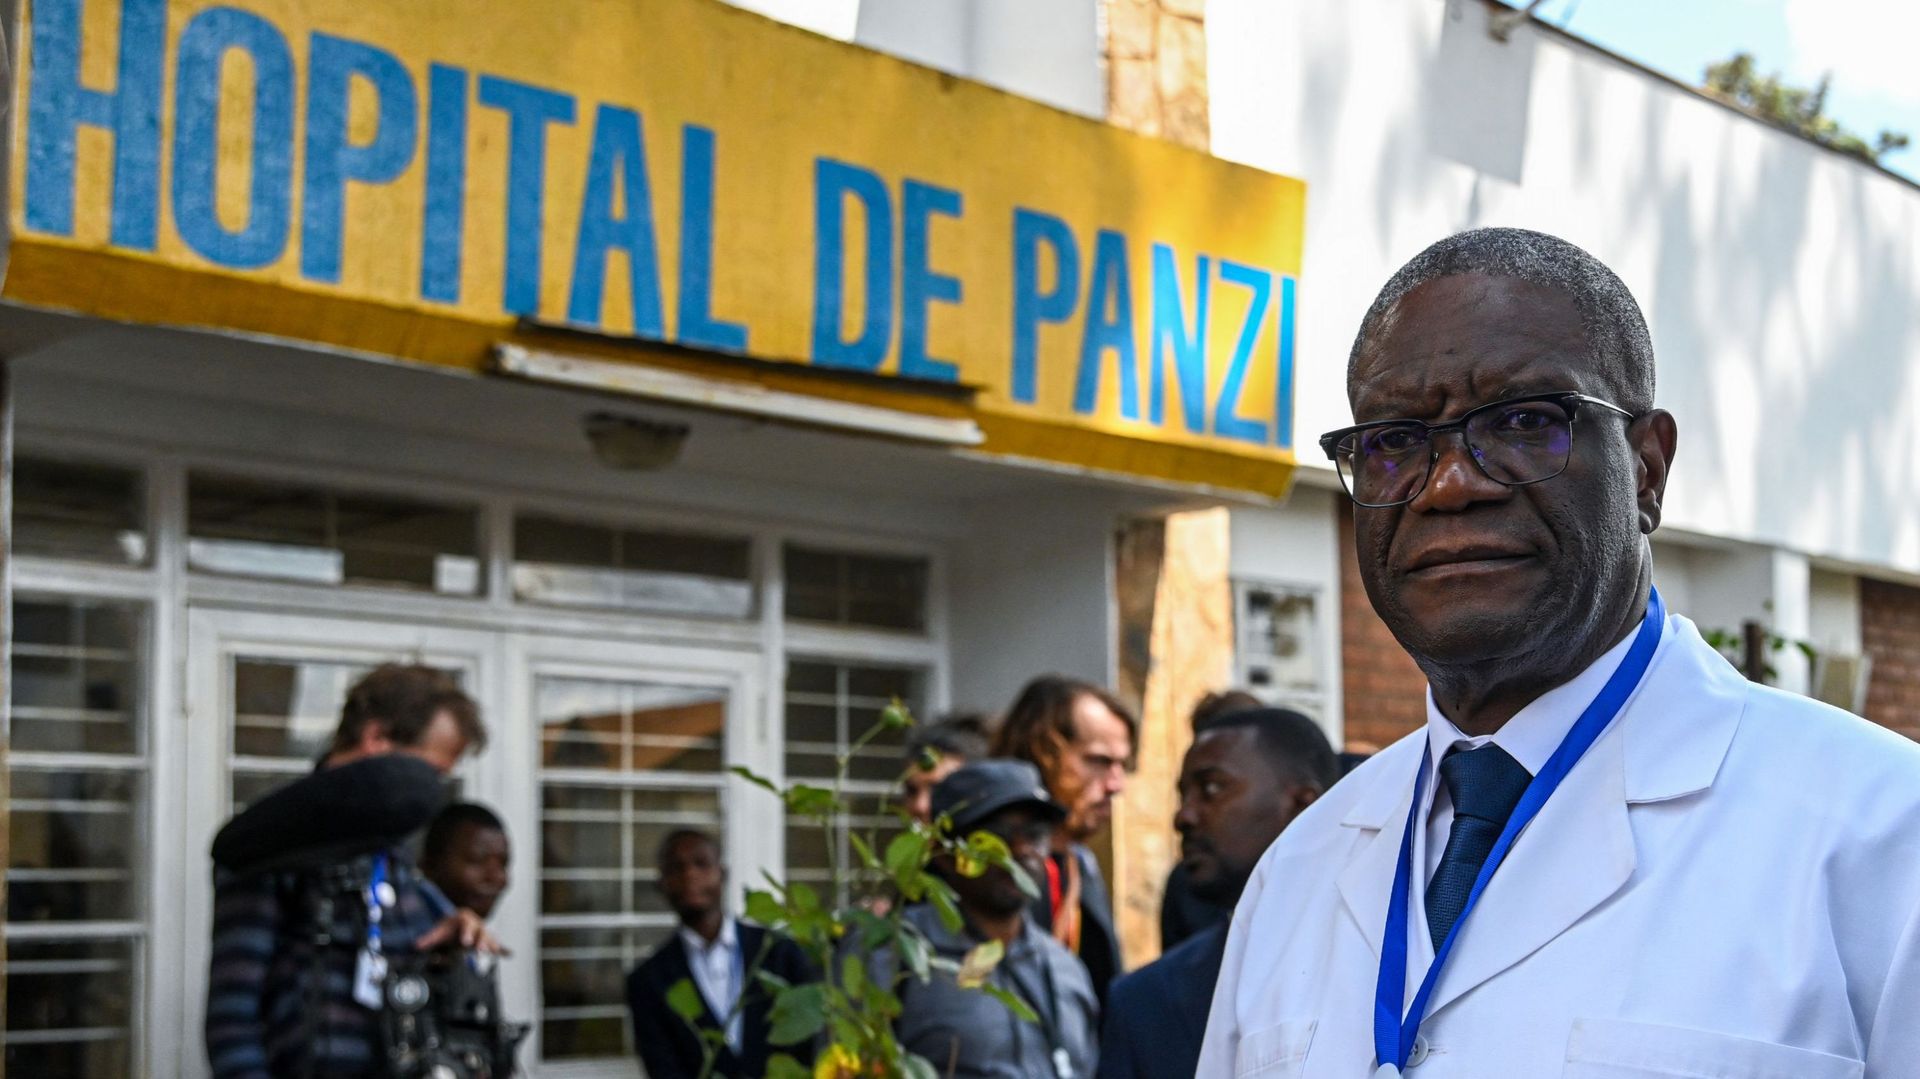 Le médecin congolais Denis Mukwege photographié lors d’une visite à l’hôpital de Panzi, dans le cadre d’une visite officielle du couple royal belge en République démocratique du Congo, dimanche 12 juin 2022, à Bukavu.